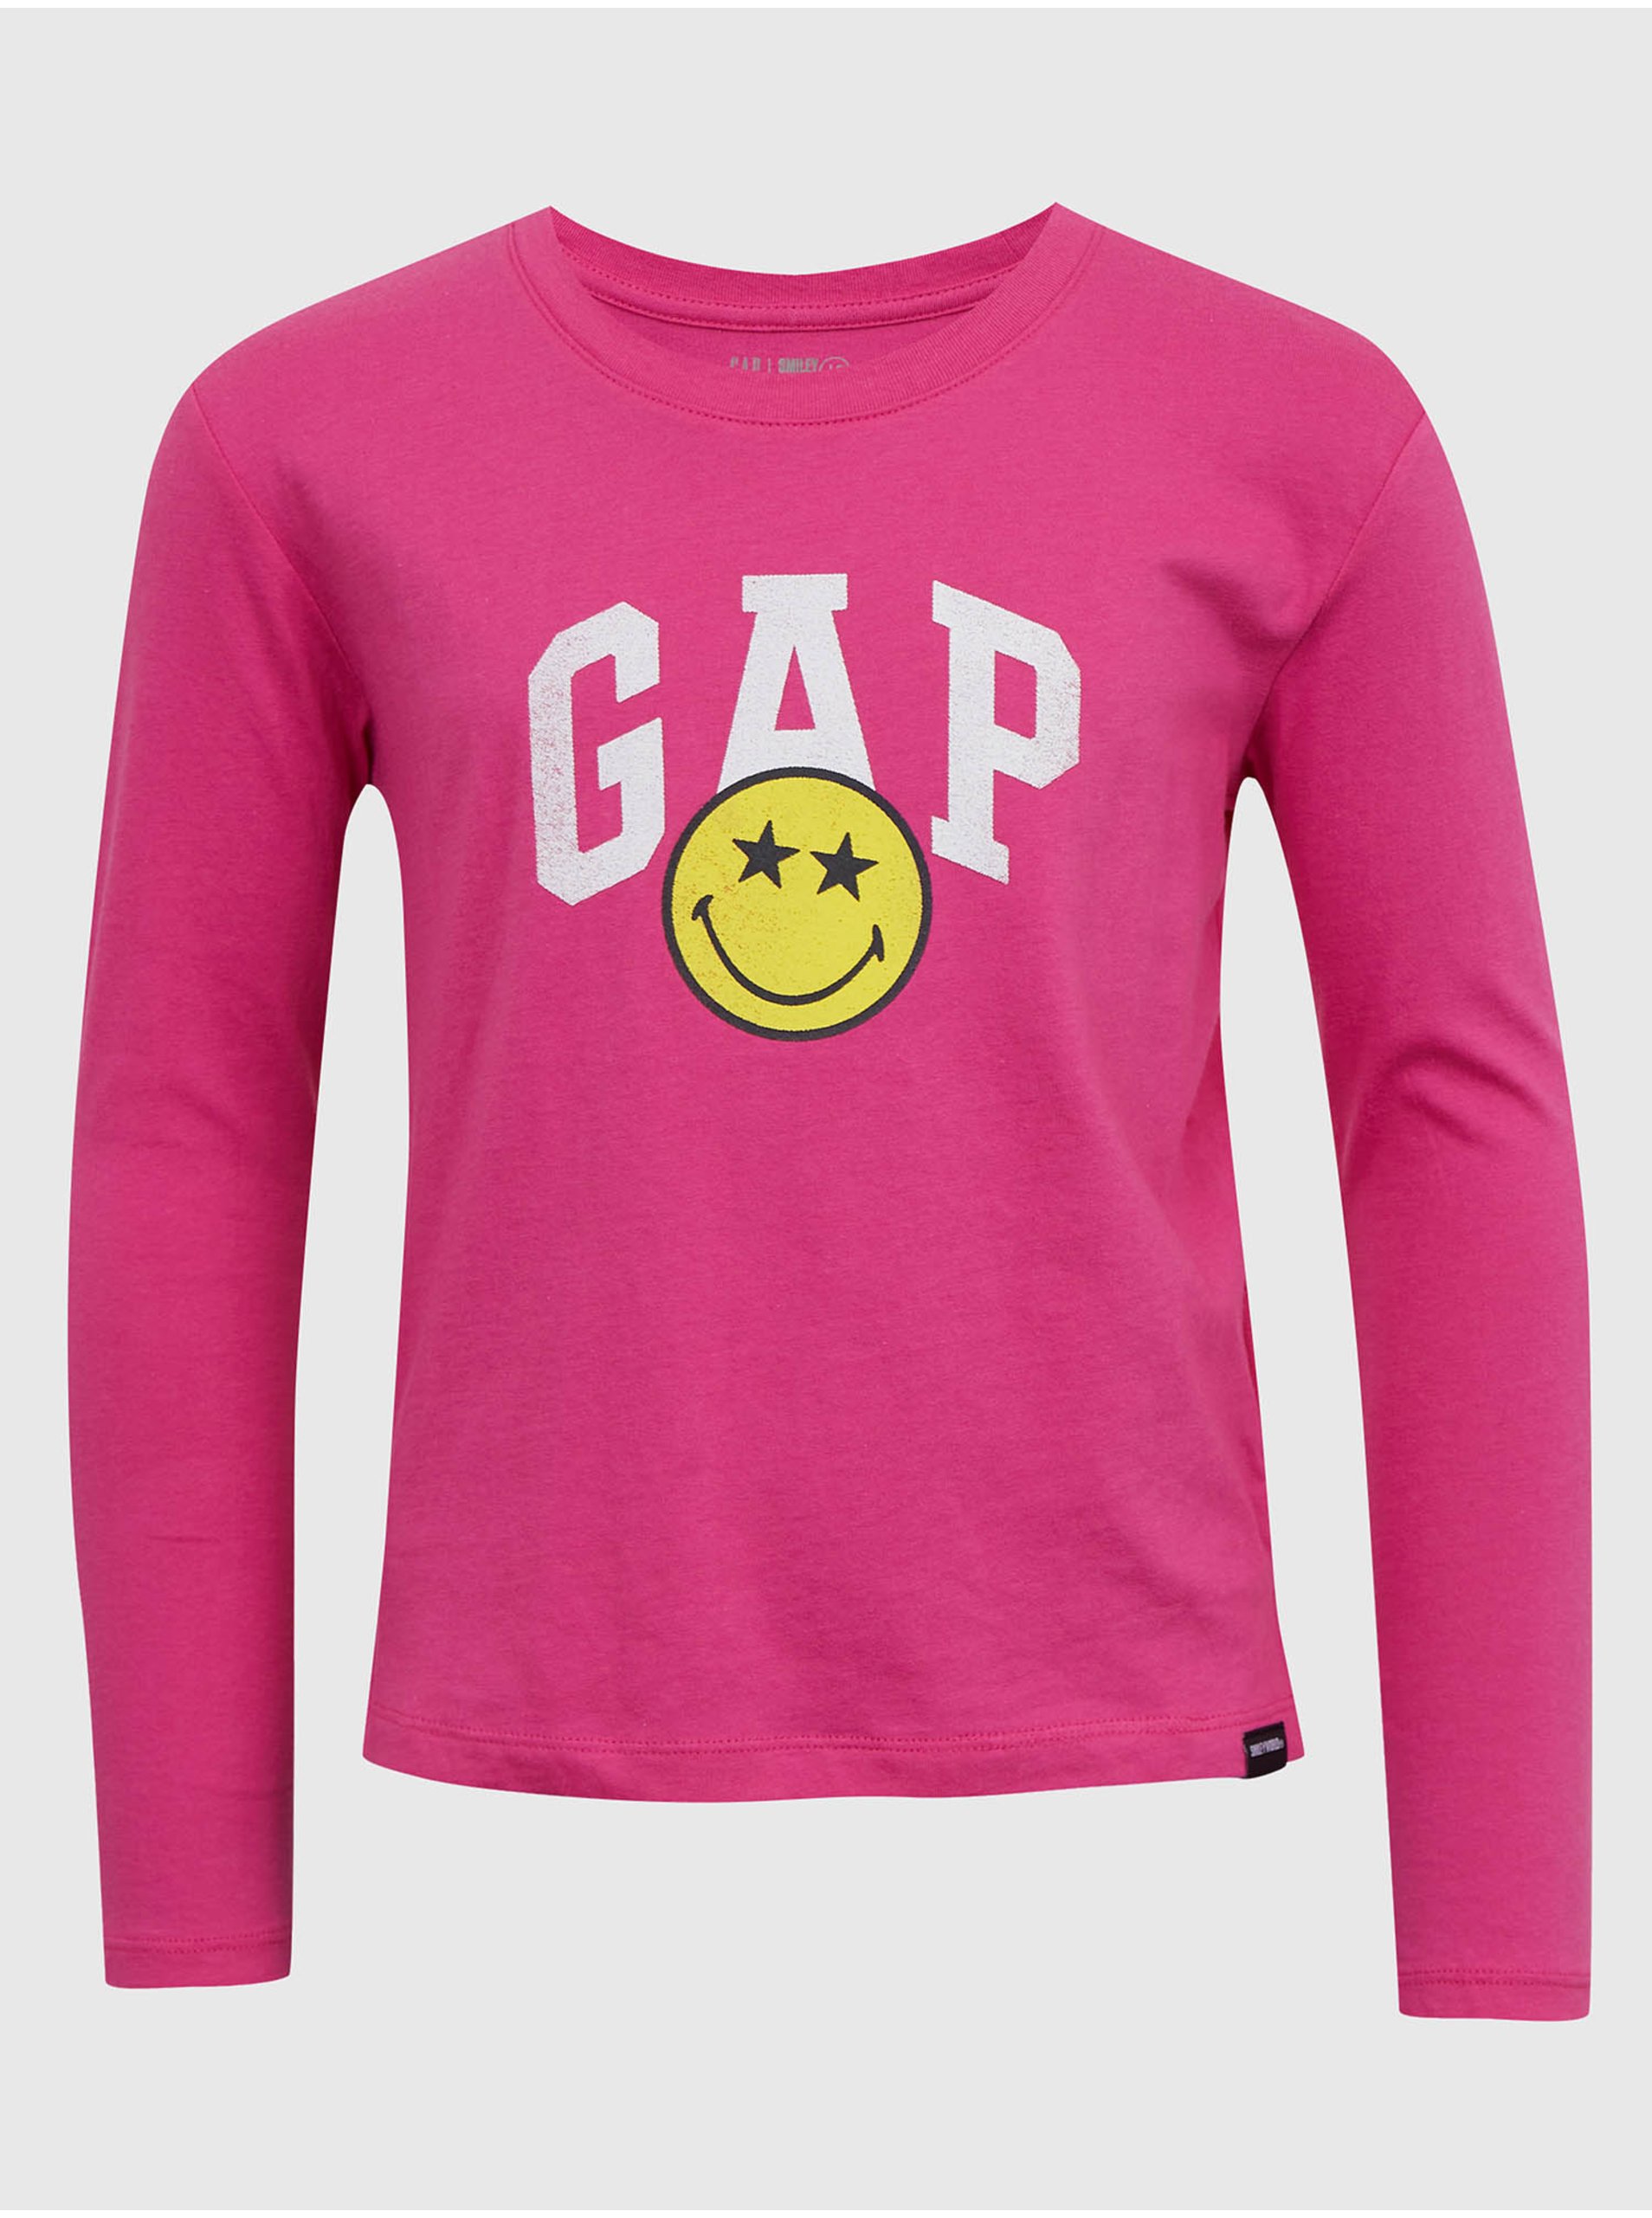 Levně Tmavě růžové holčičí tričko s potiskem GAP & Smiley®